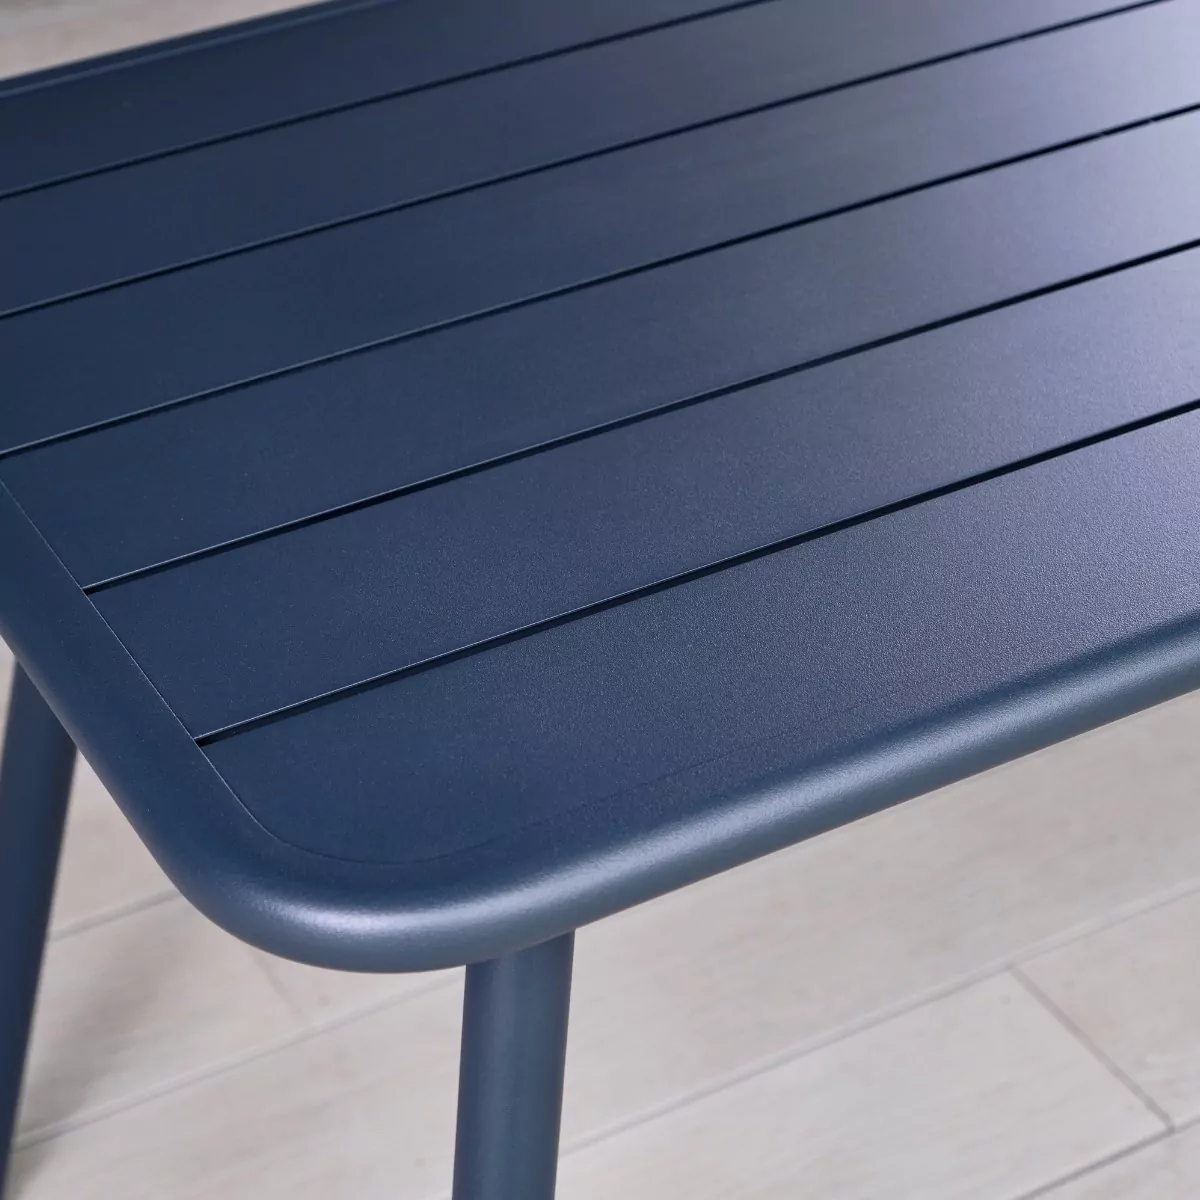 1.2m Grey Indoor & Outdoor Rectangular Metal Table Hamsterley Range - Close Up